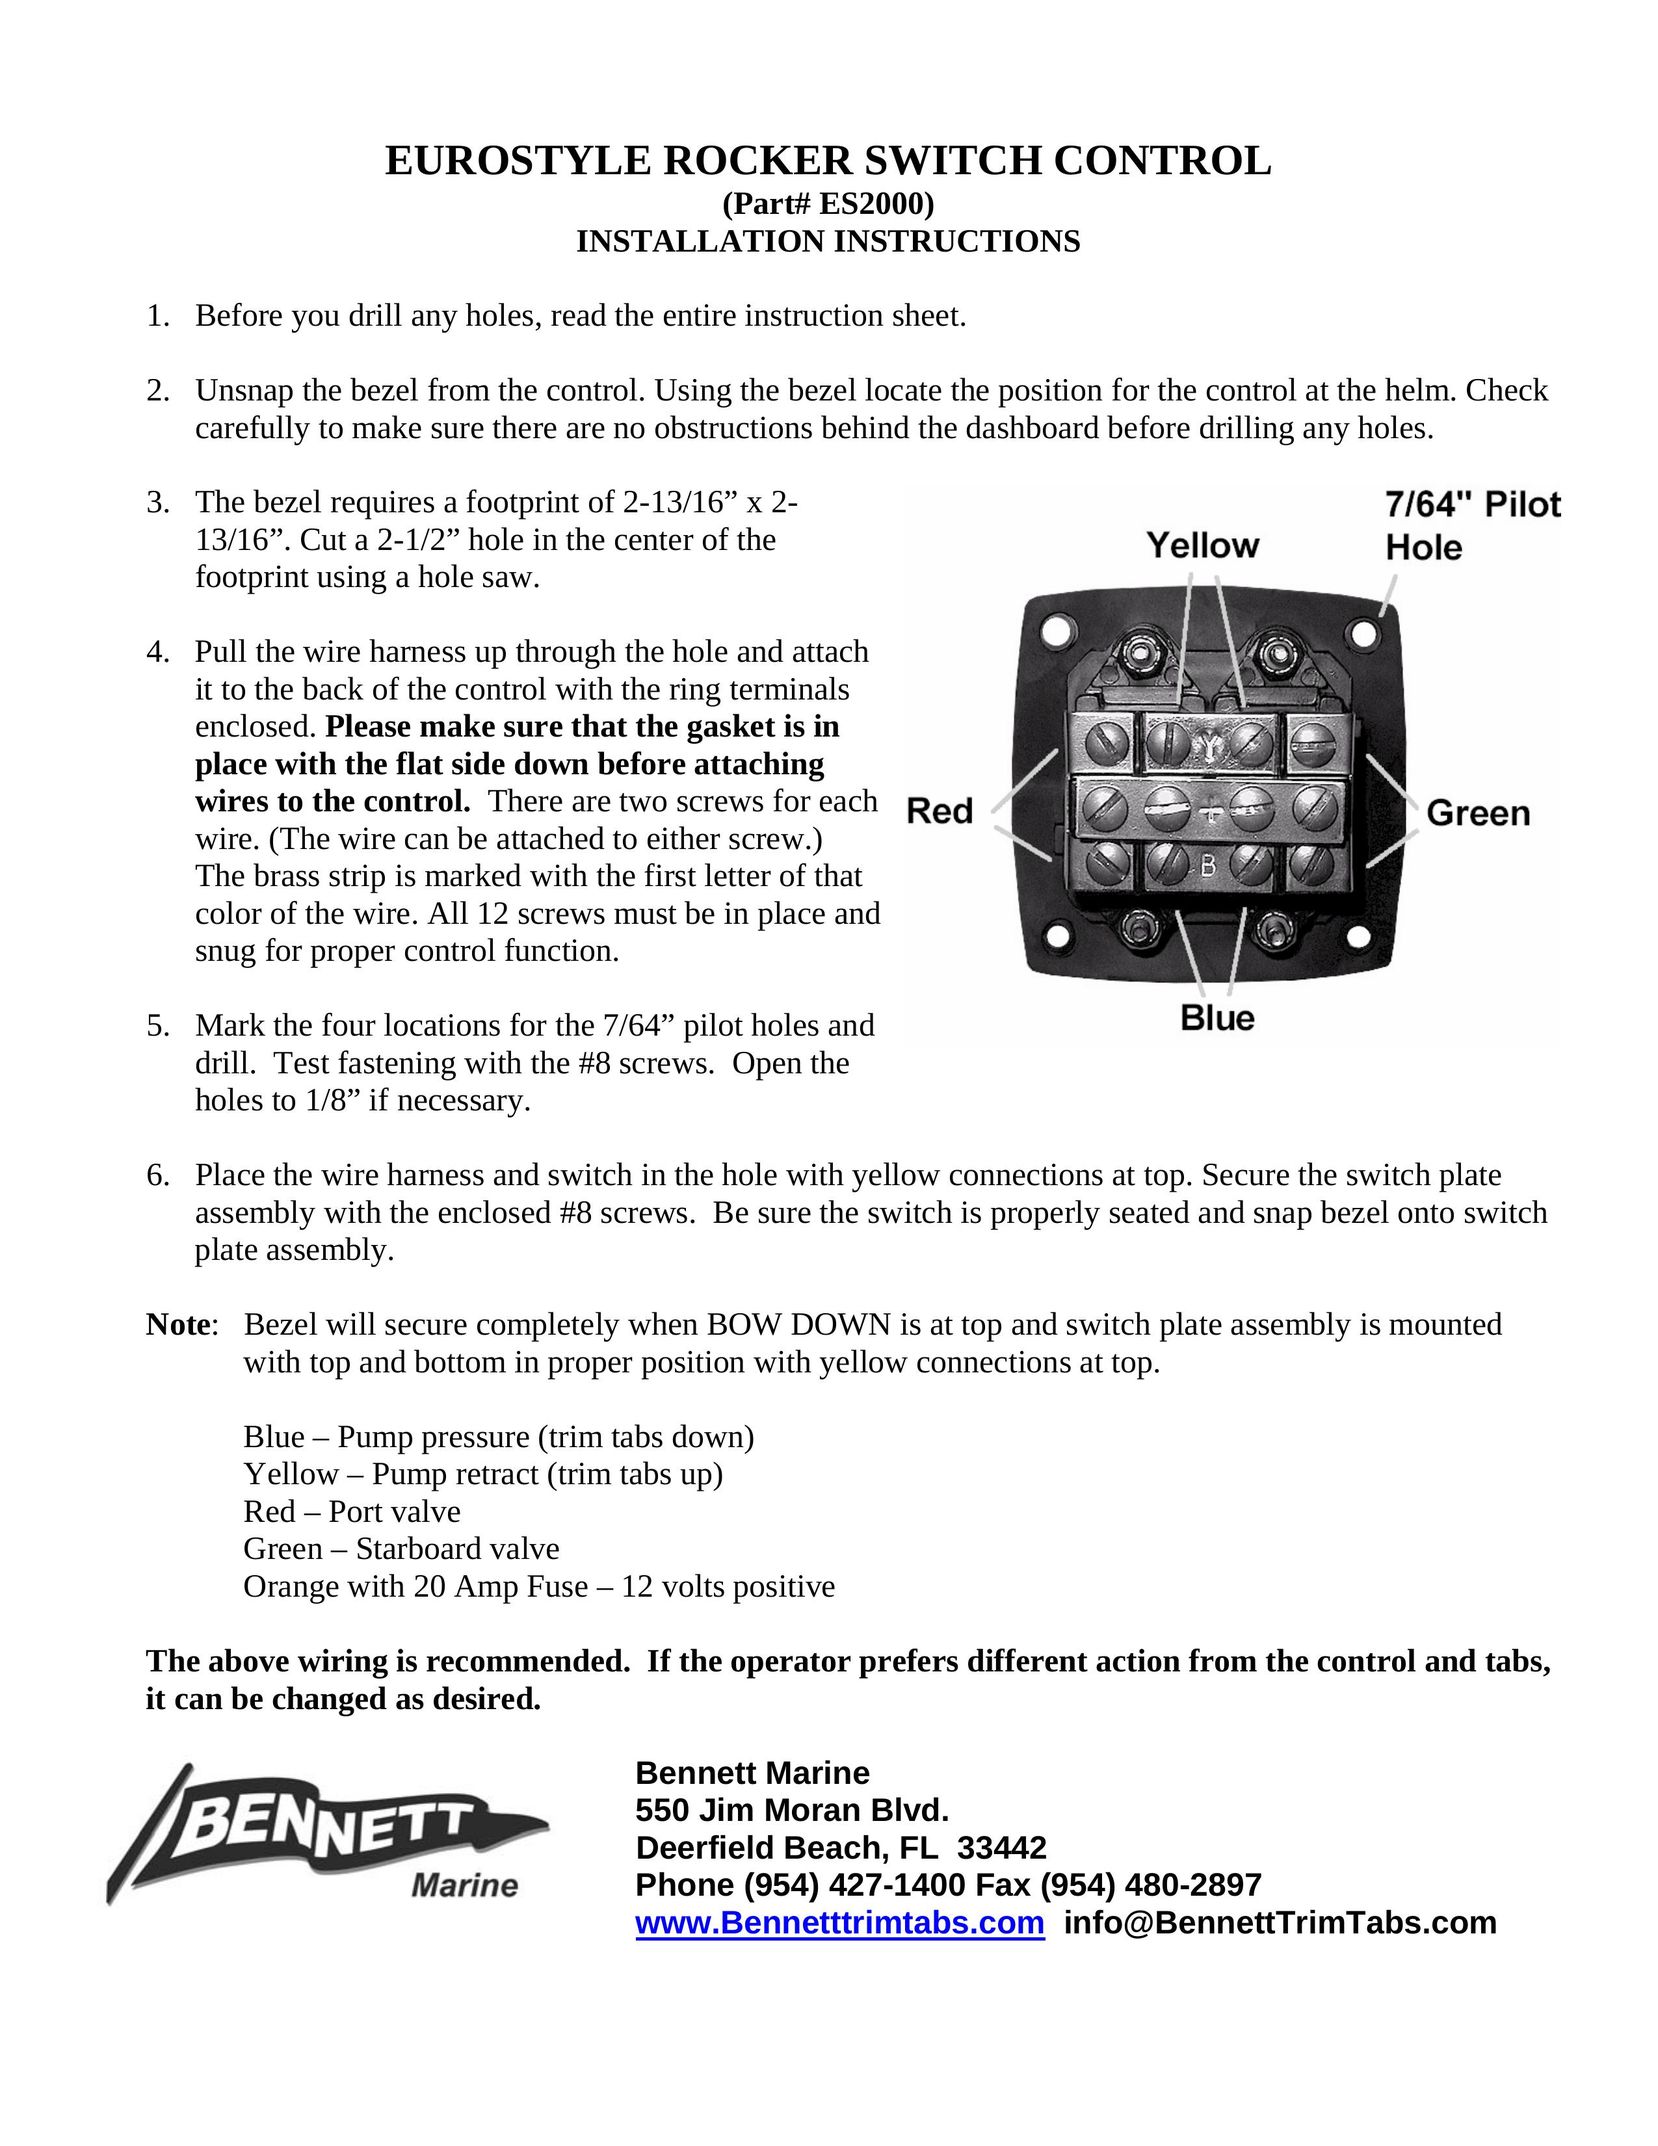 Bennett Marine ES2000 Switch User Manual